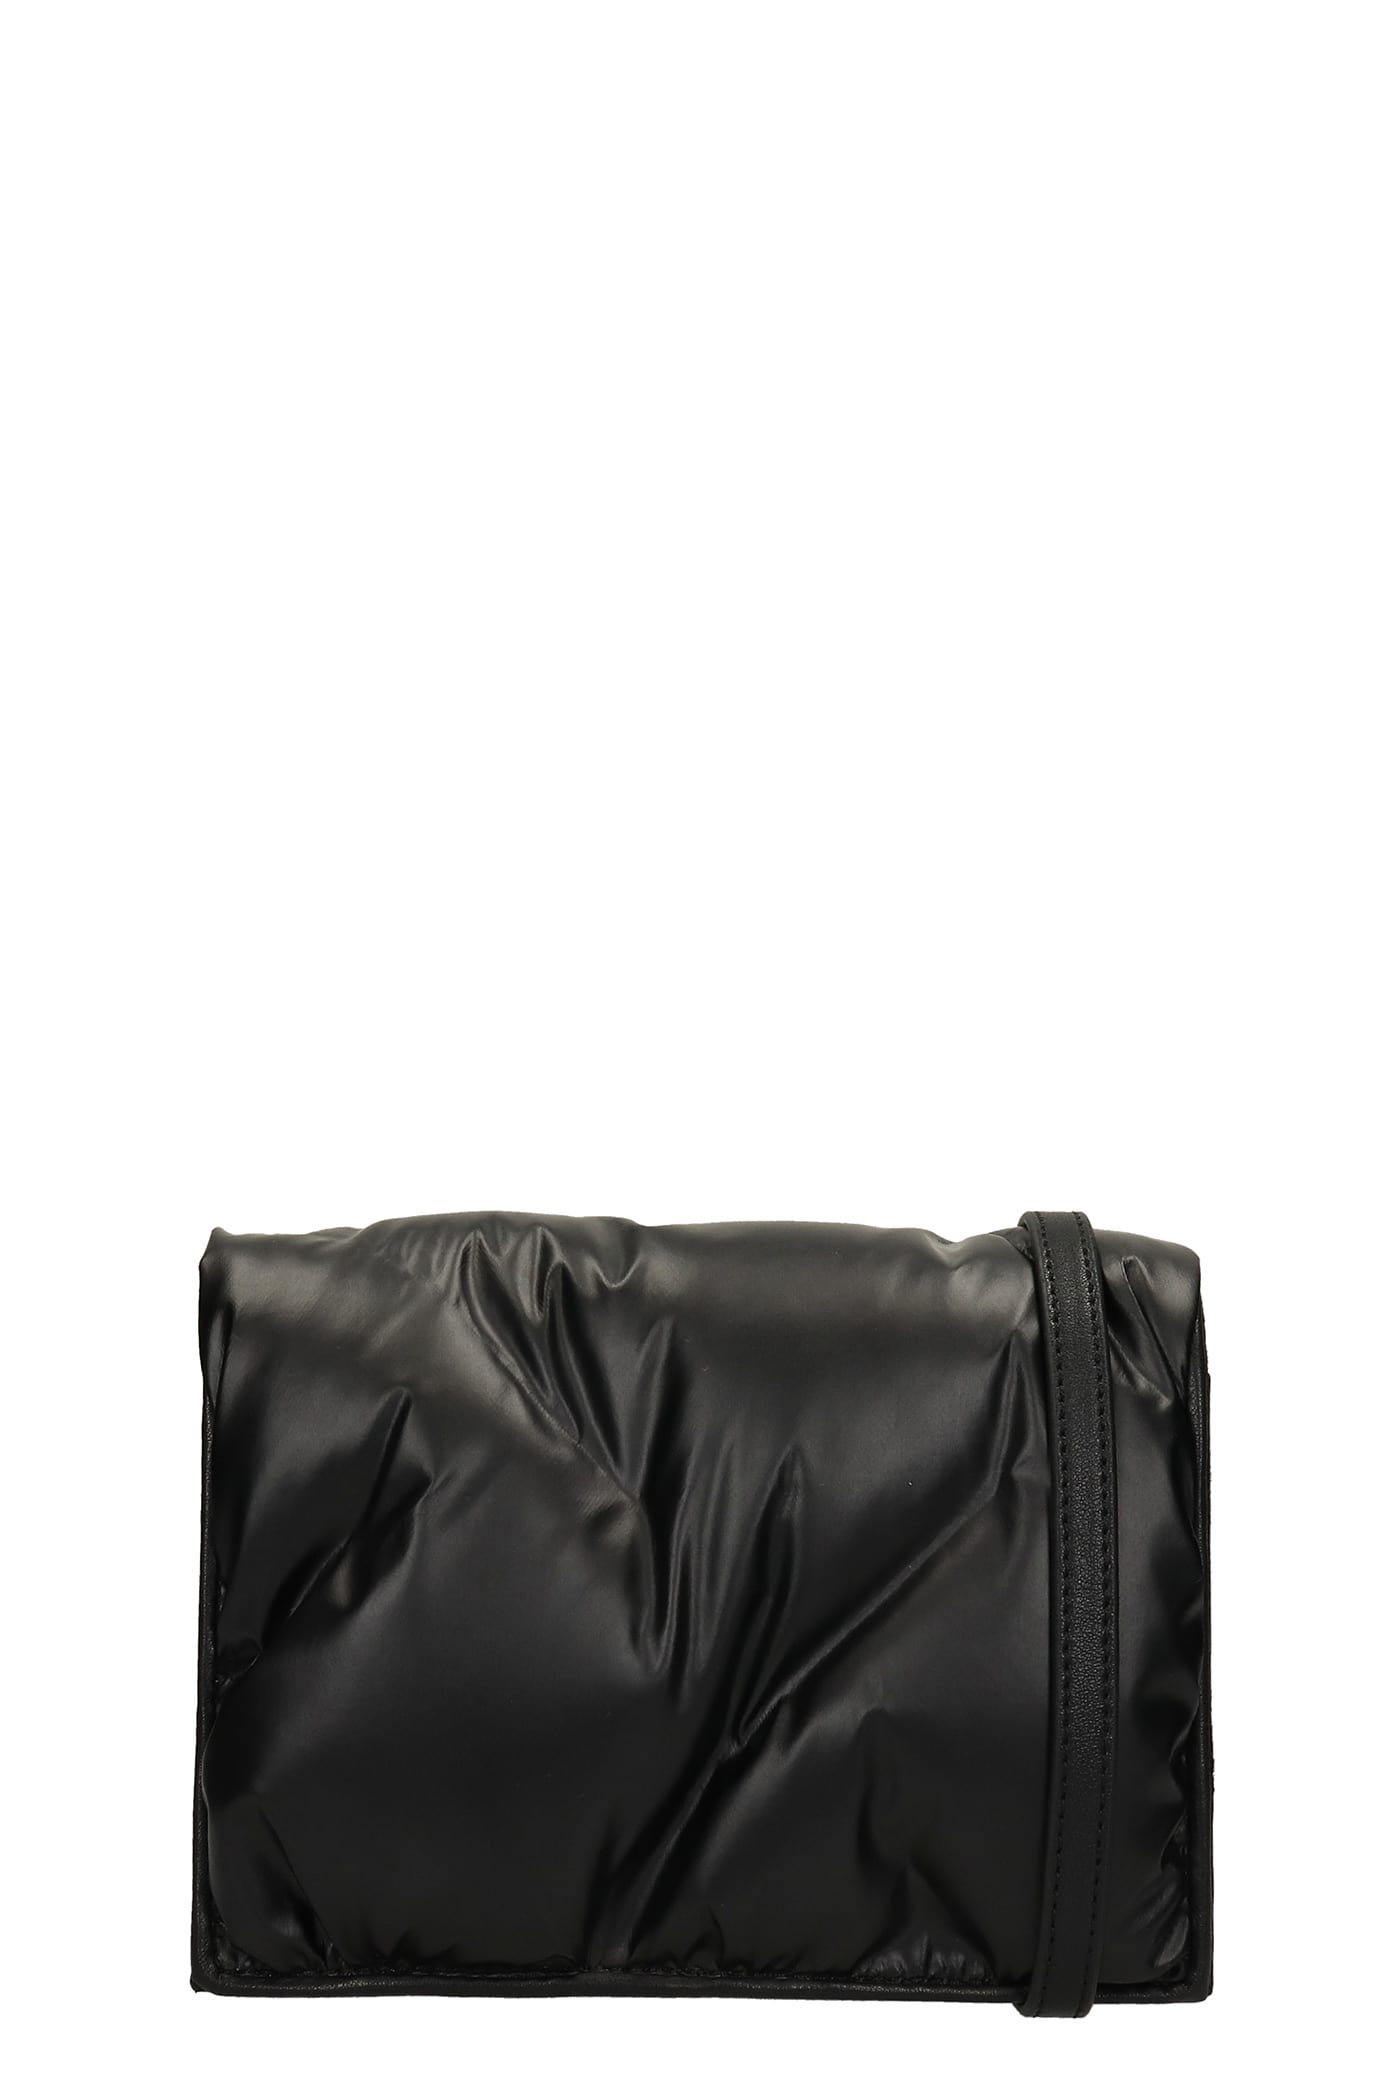 LAutre Chose Shoulder Bag In Black Nylon